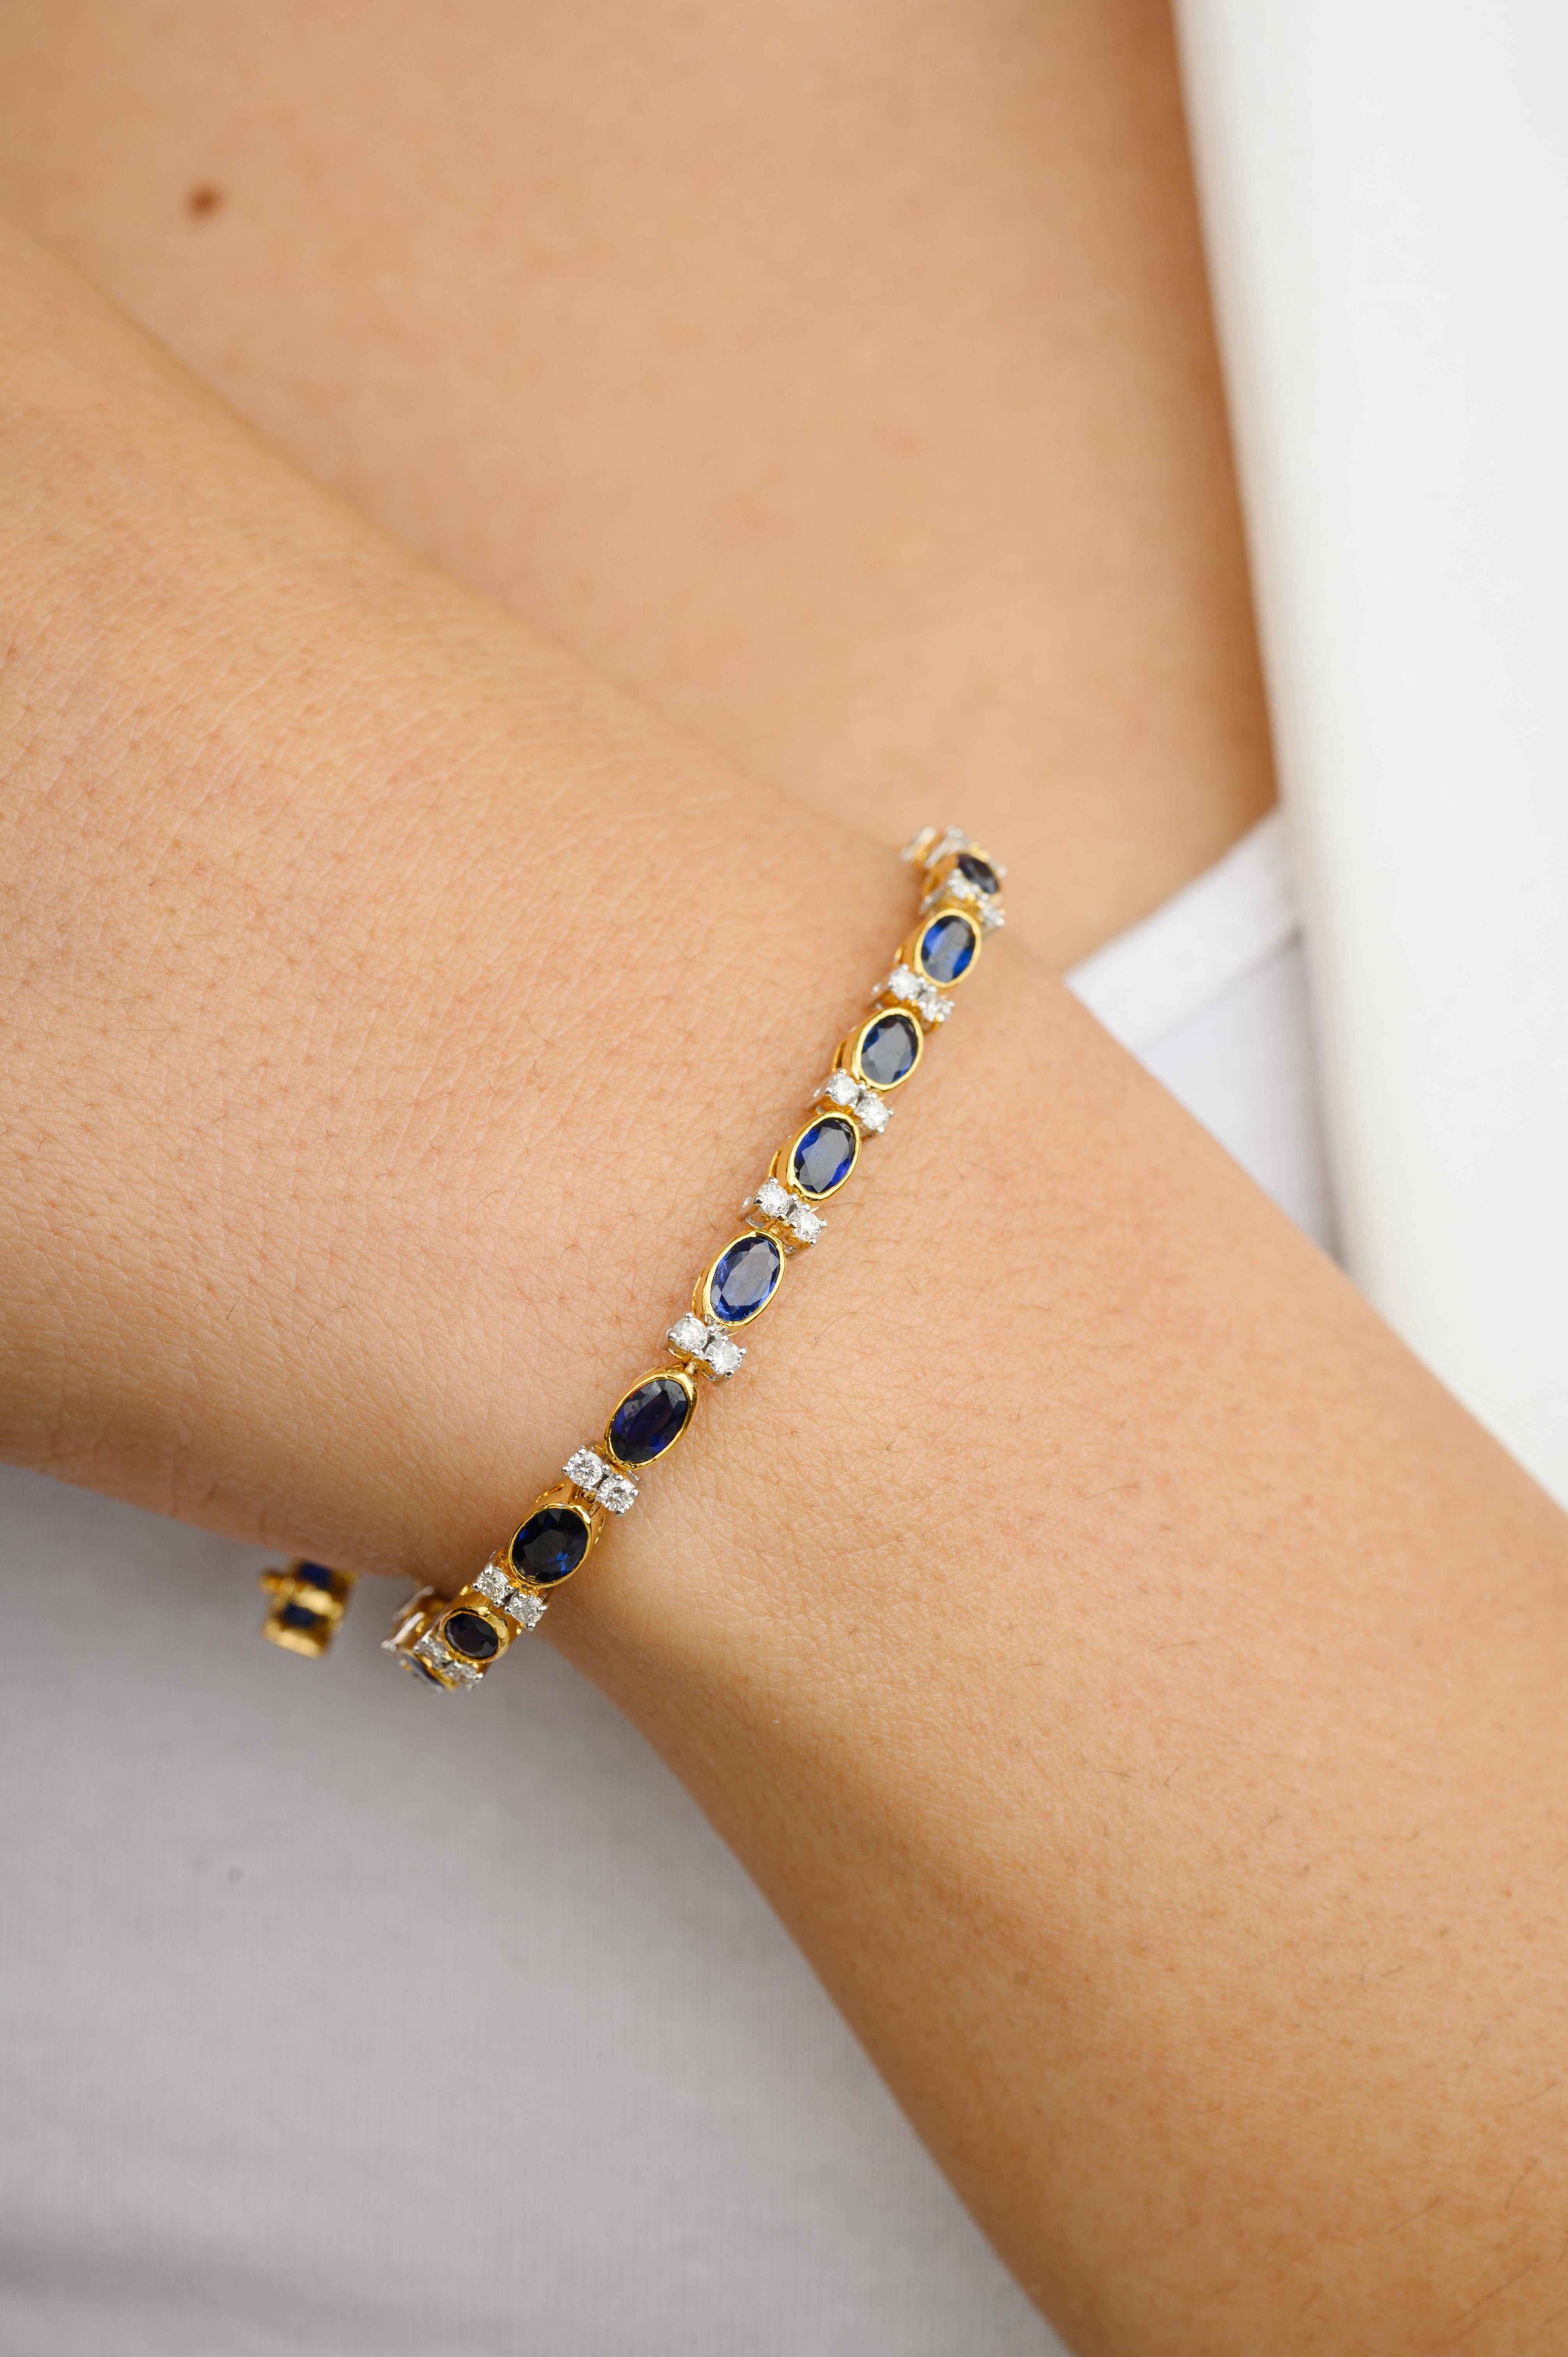 Dieses 6,91 CTW natürliche blaue Saphir-Diamant-Hochzeits-Tennisarmband aus 18 Karat Gold präsentiert einen unendlich funkelnden natürlichen blauen Saphir von 6,91 Karat und 0,97 Karat Diamanten. Es misst 7.25 Zoll in der Länge. 
Saphir fördert die